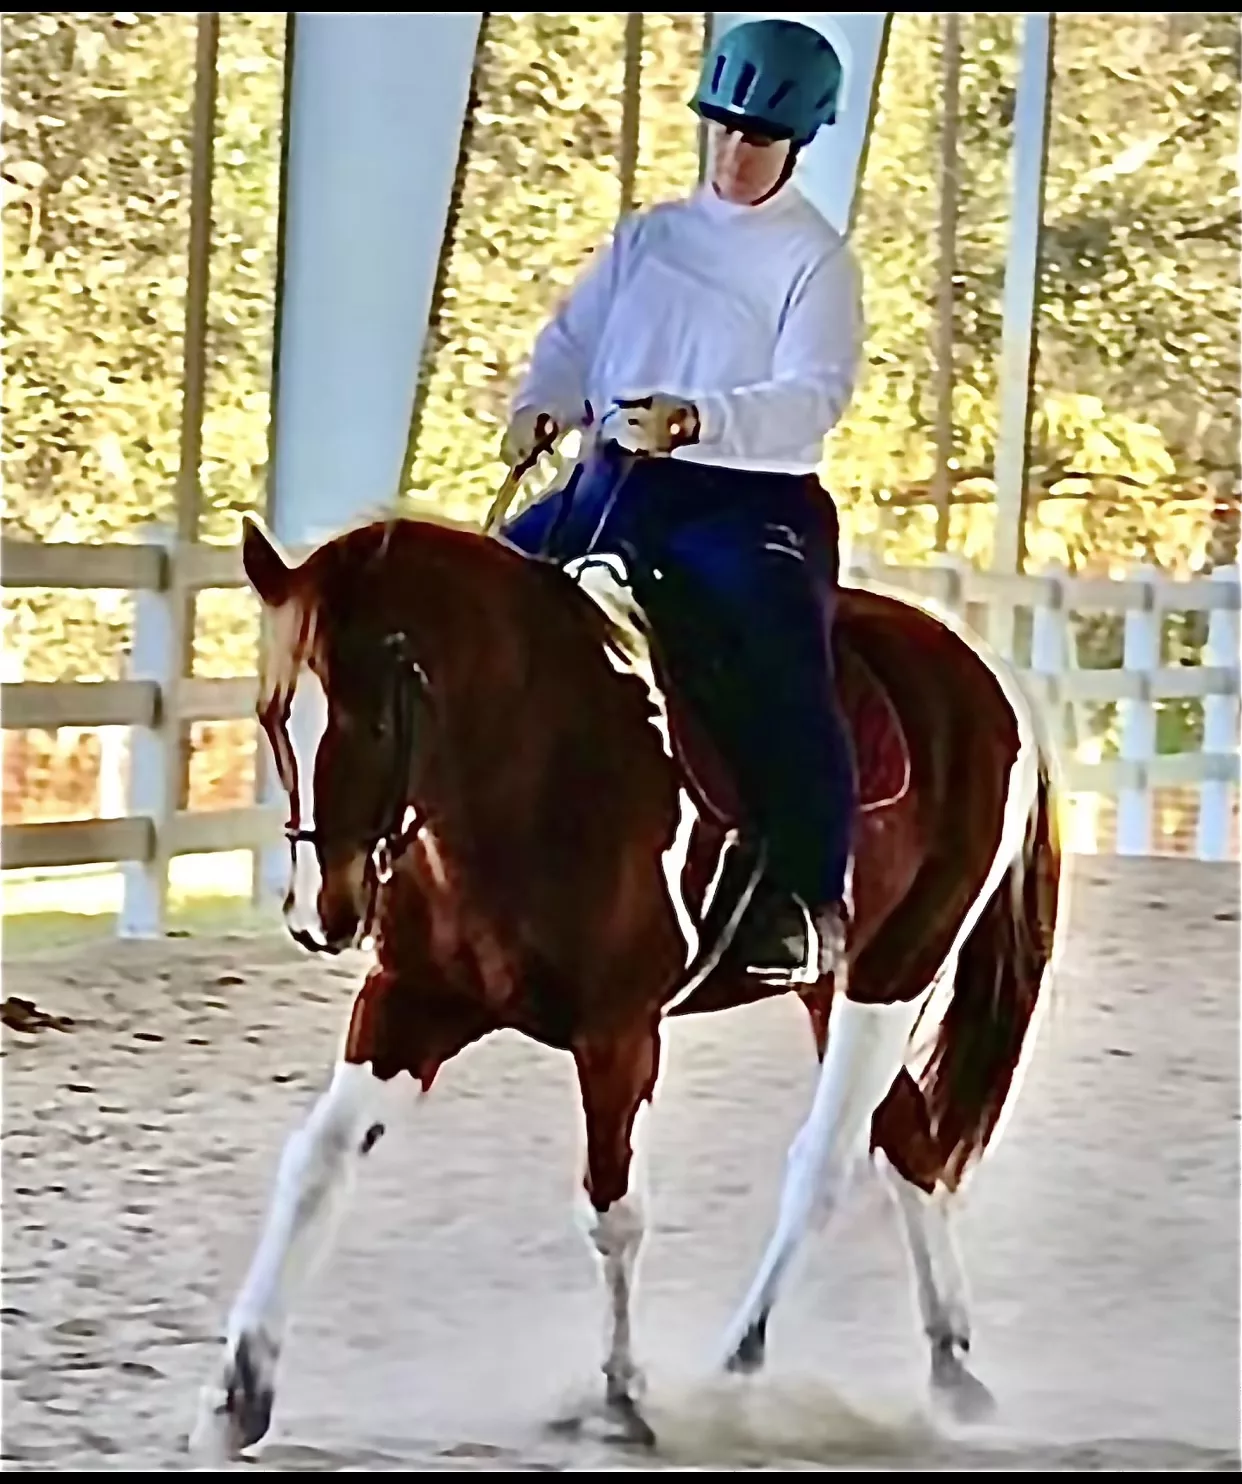 Cianciotto riding a horse post-surgery.  